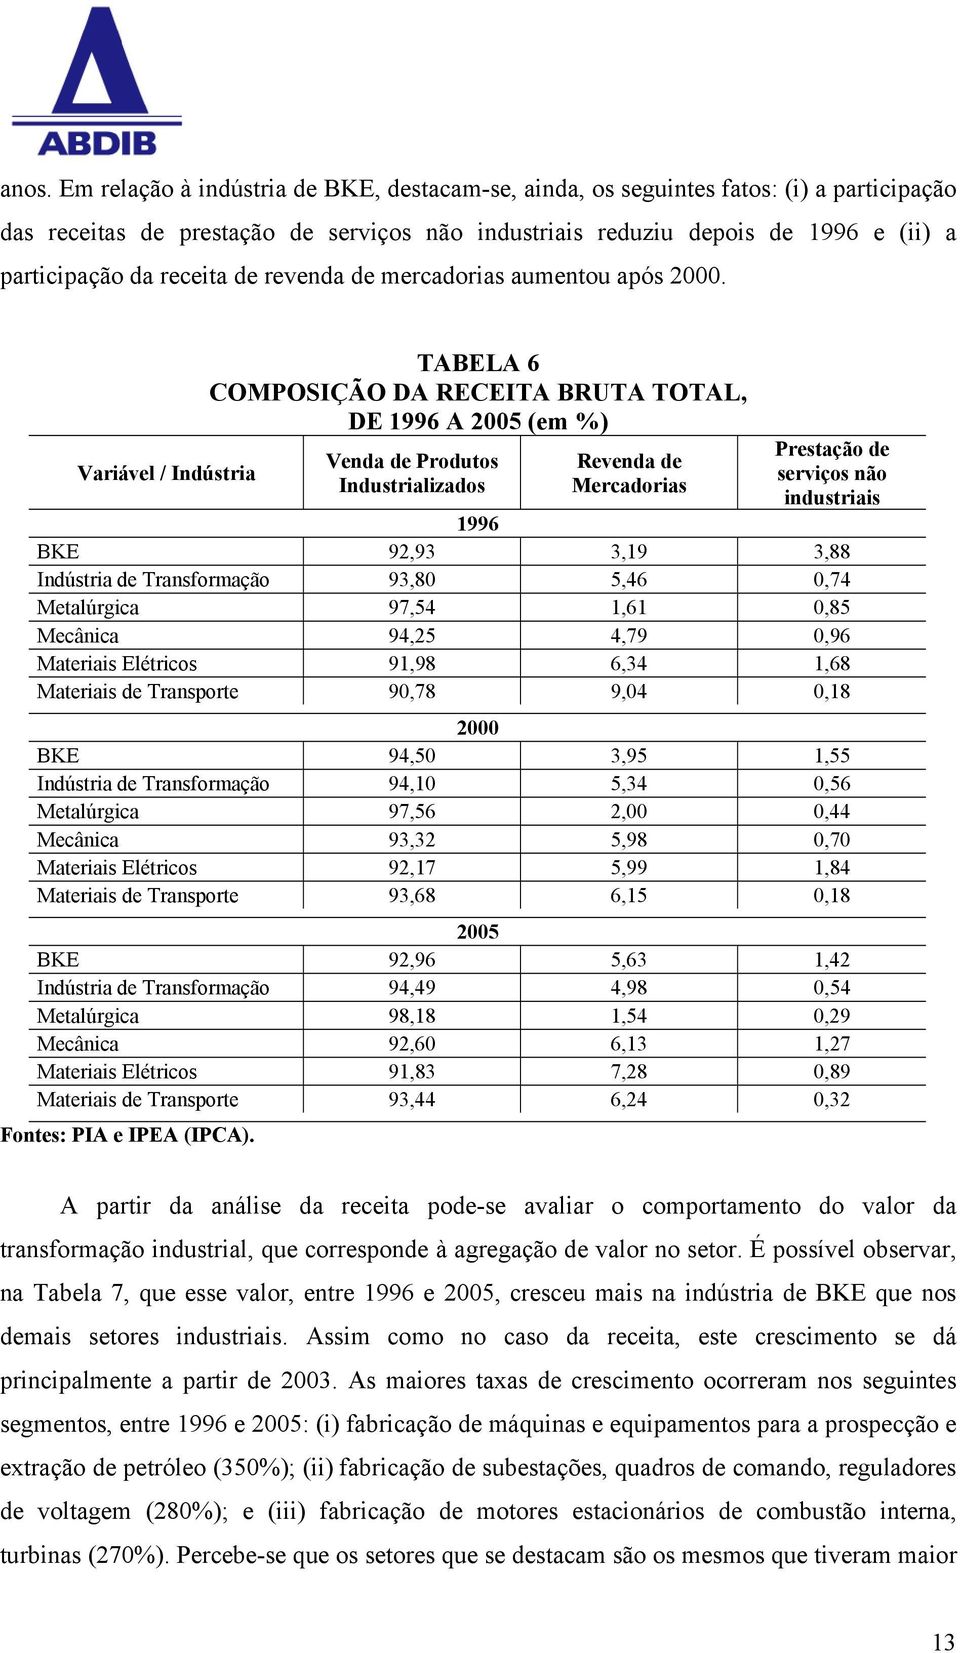 Variável / Indústria TABELA 6 COMPOSIÇÃO DA RECEITA BRUTA TOTAL, DE 1996 A 2005 (em %) Venda de Produtos Industrializados Revenda de Mercadorias Prestação de serviços não industriais 1996 BKE 92,93